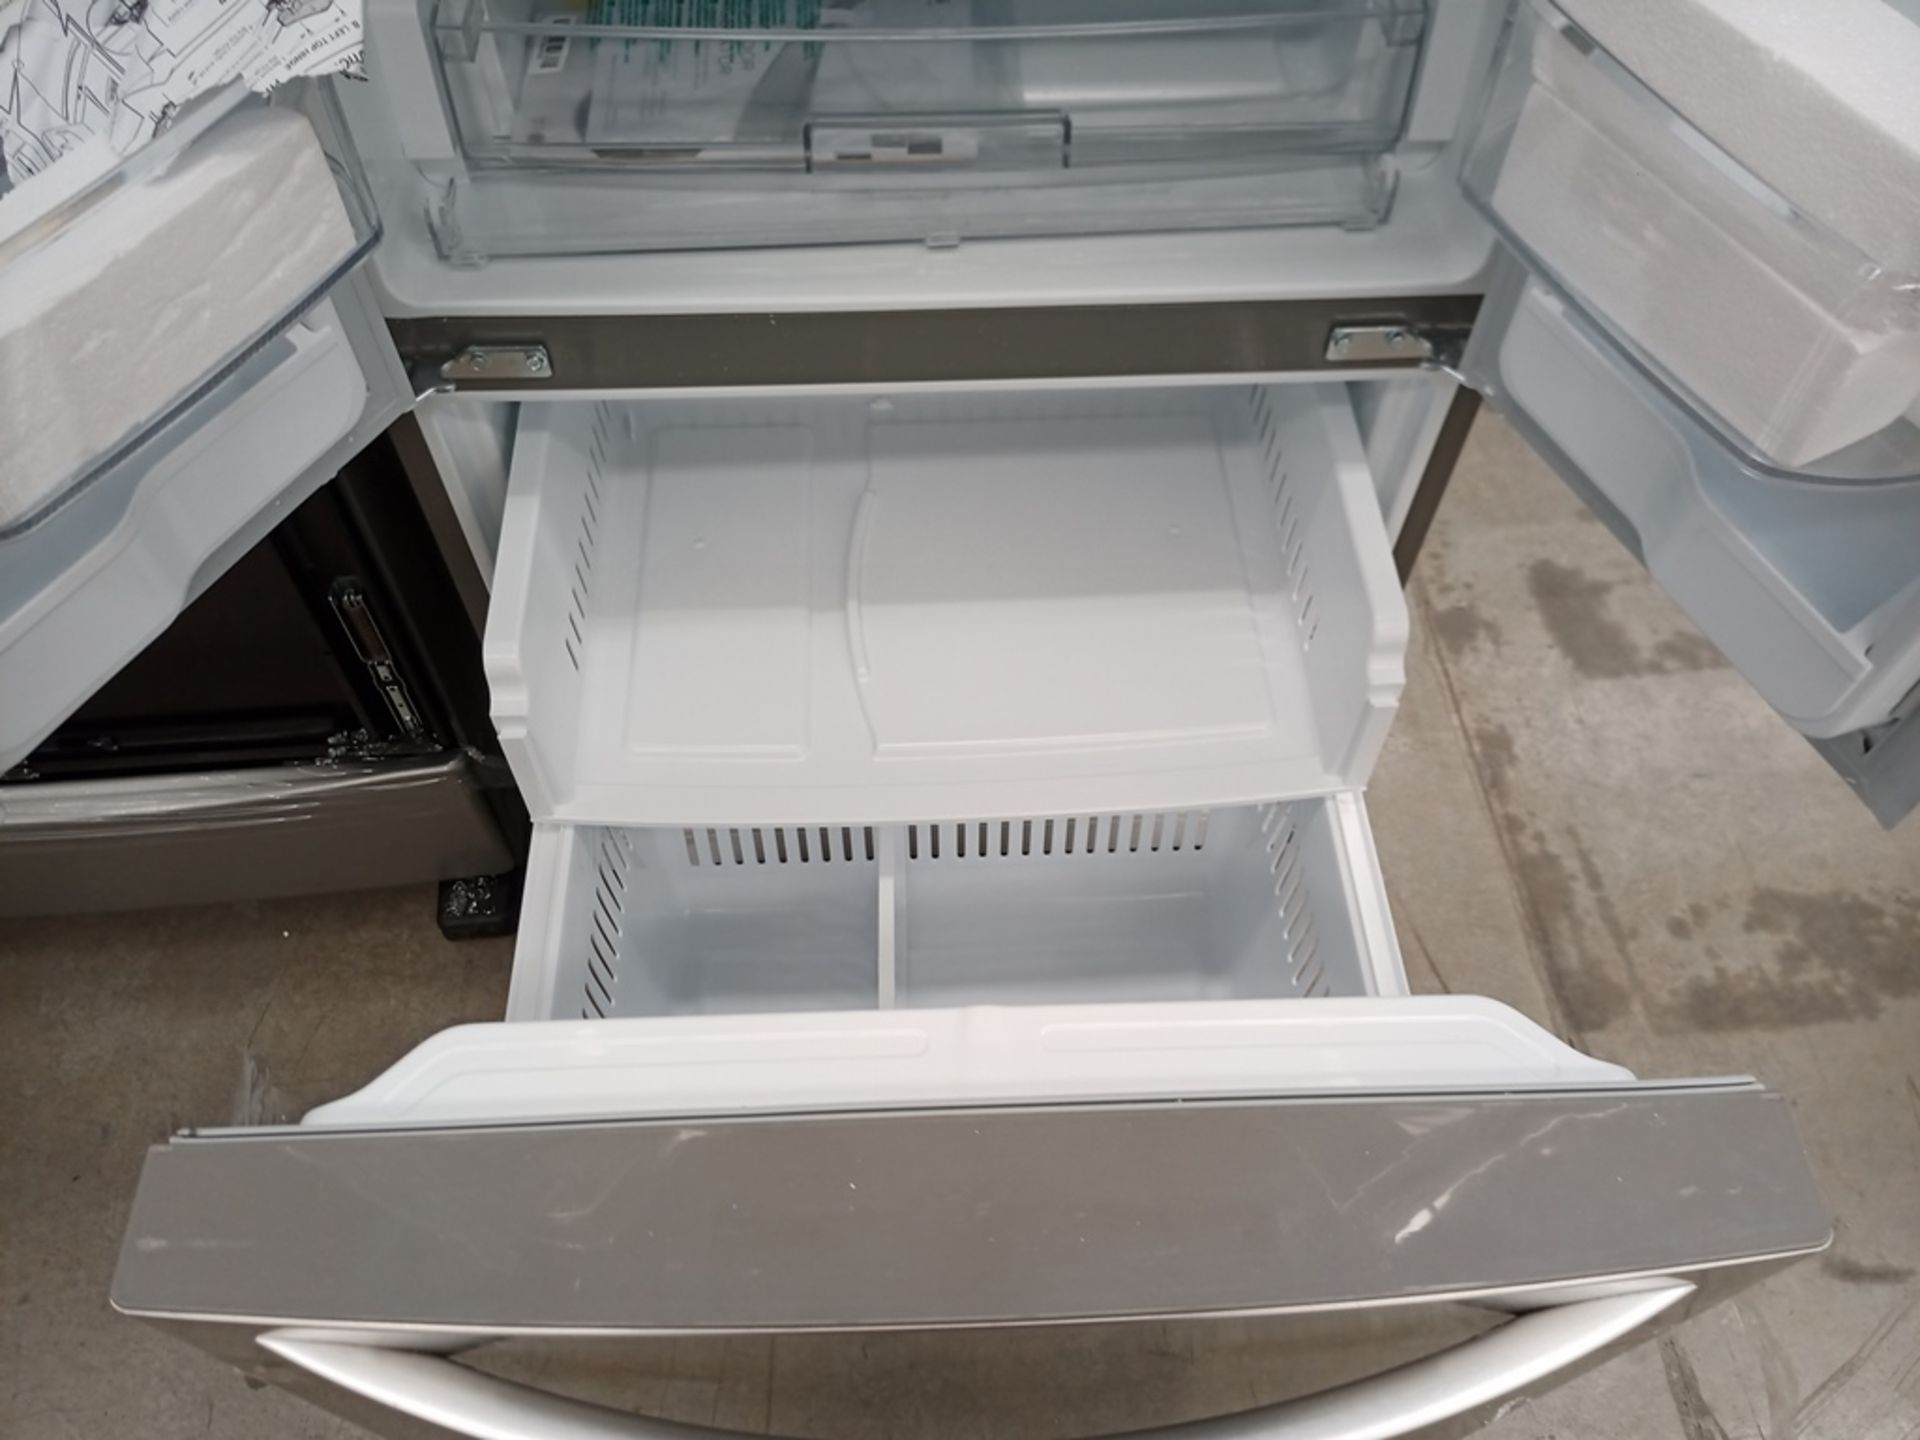 1 Refrigerador con dispensador de agua, Marca LG, Modelo GF22BGSK, Serie 112MRYA05834, Color Gris. - Image 9 of 10